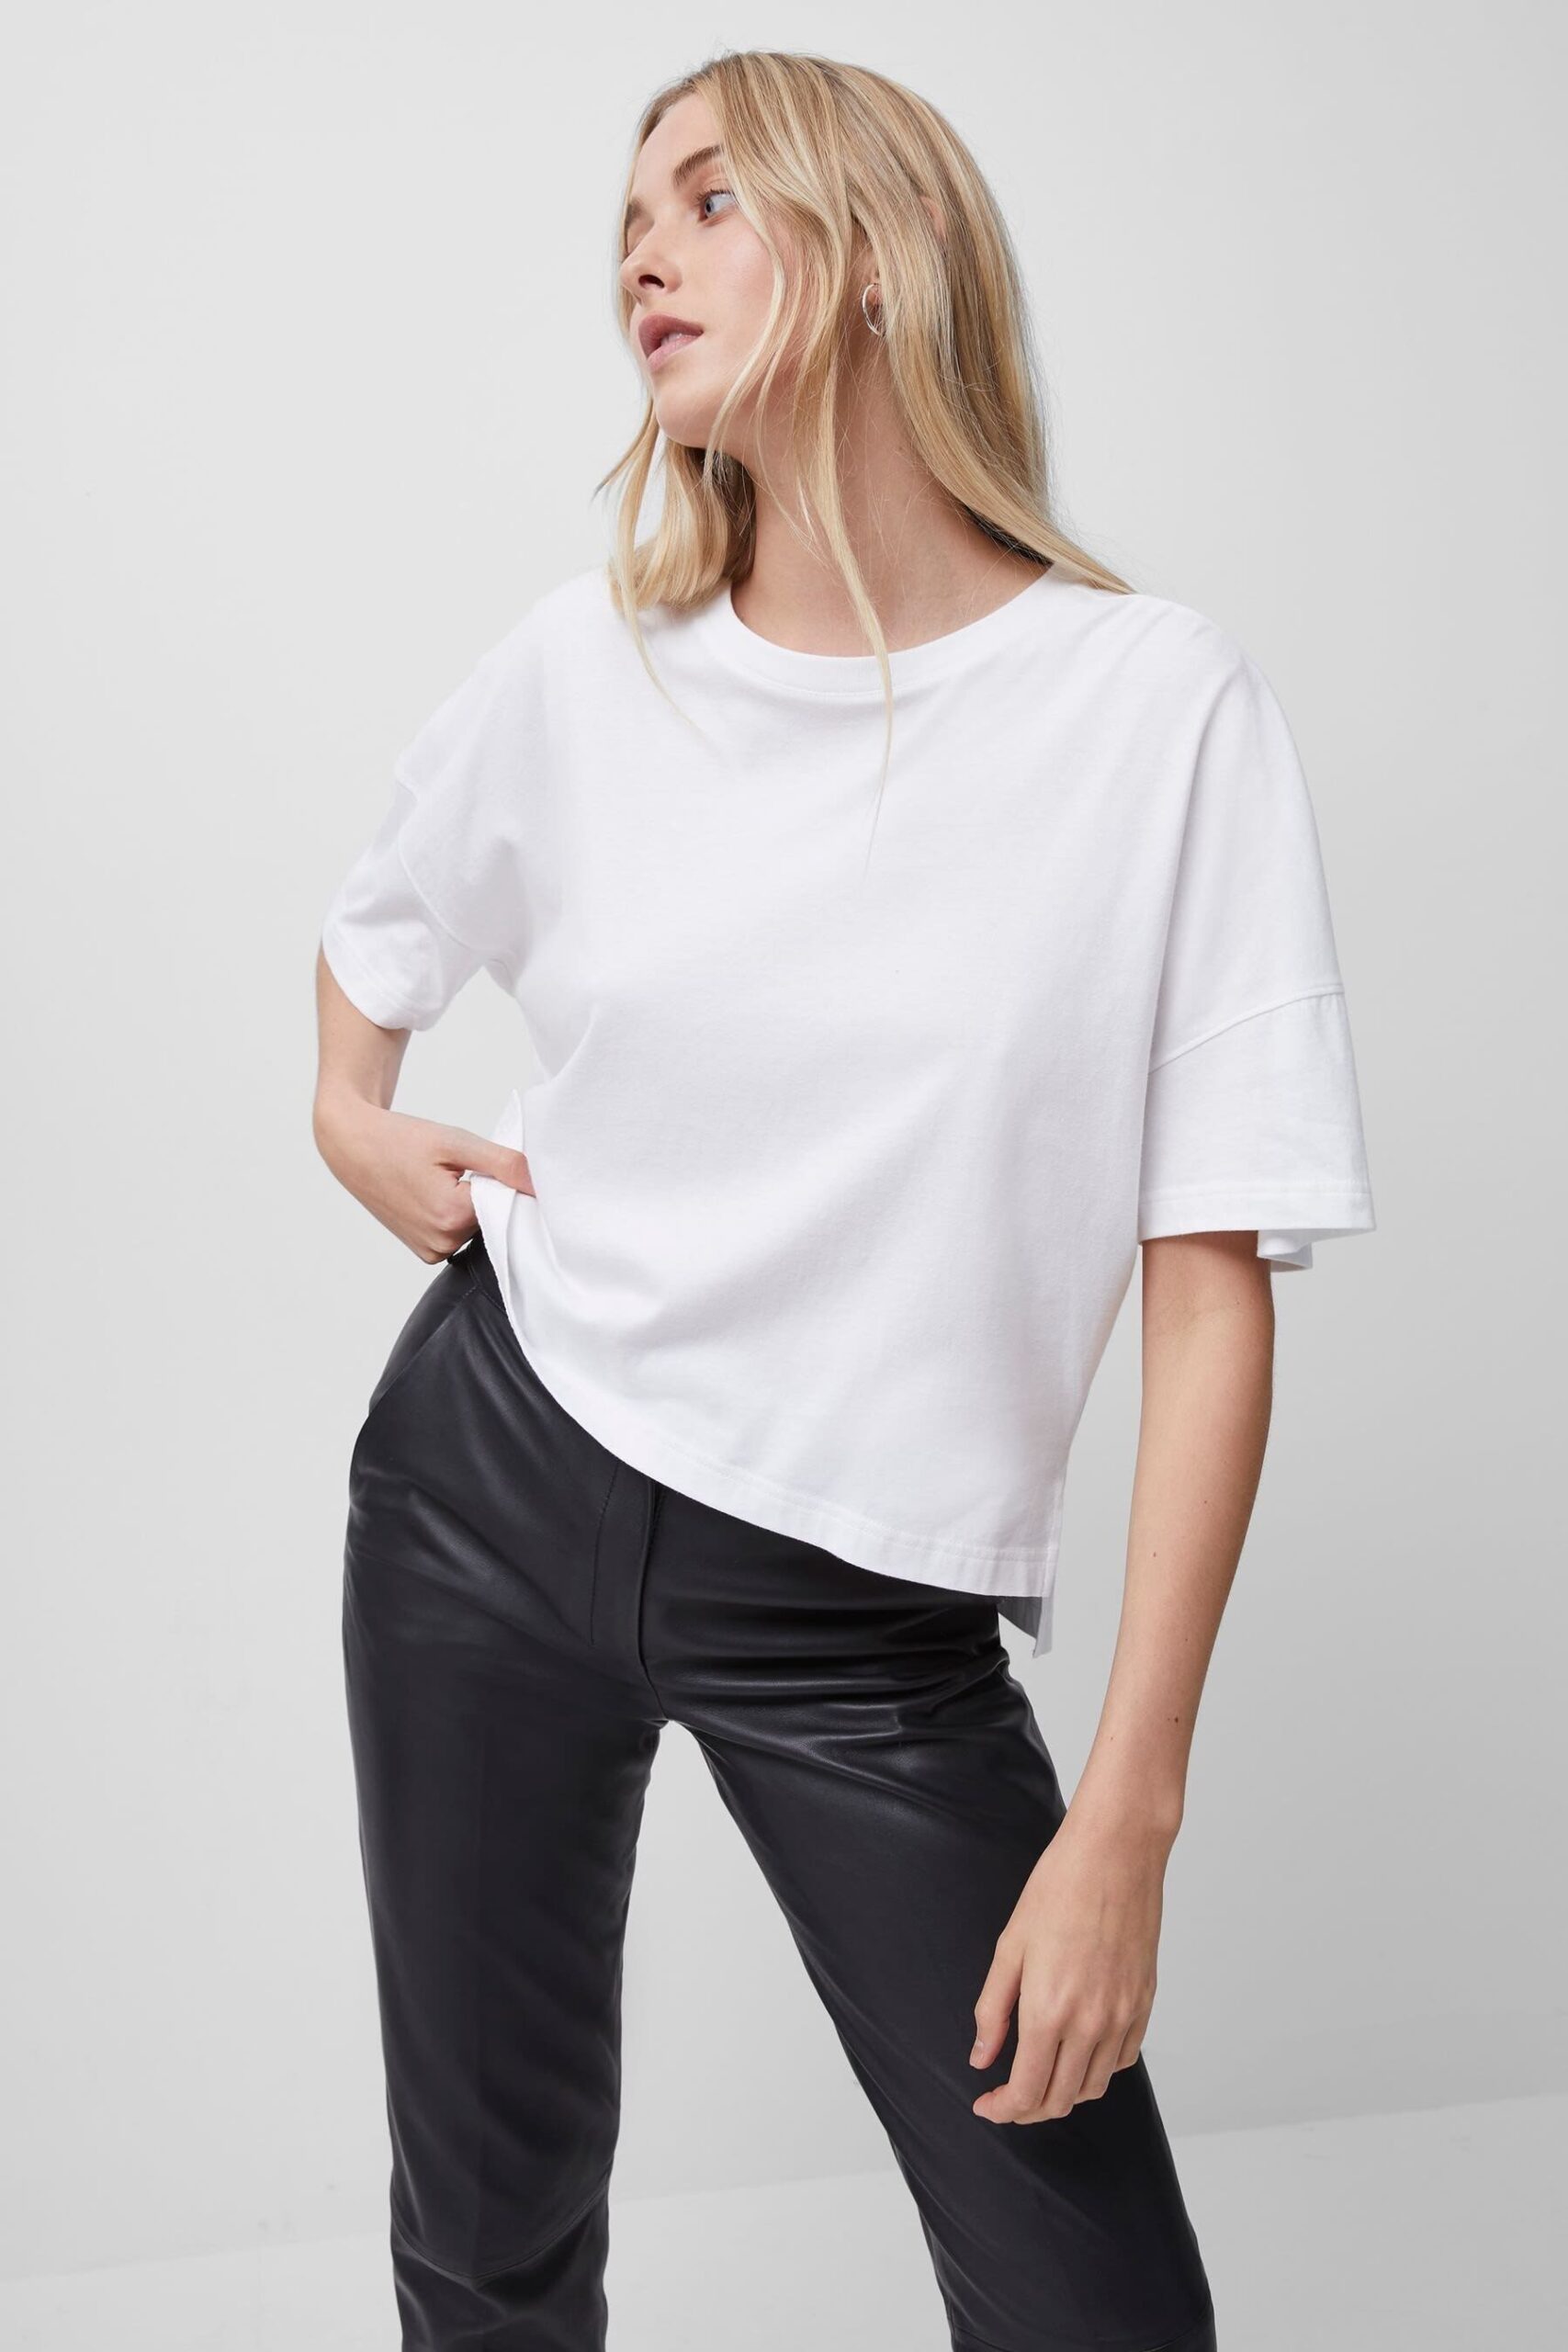 Tally T-Shirt White